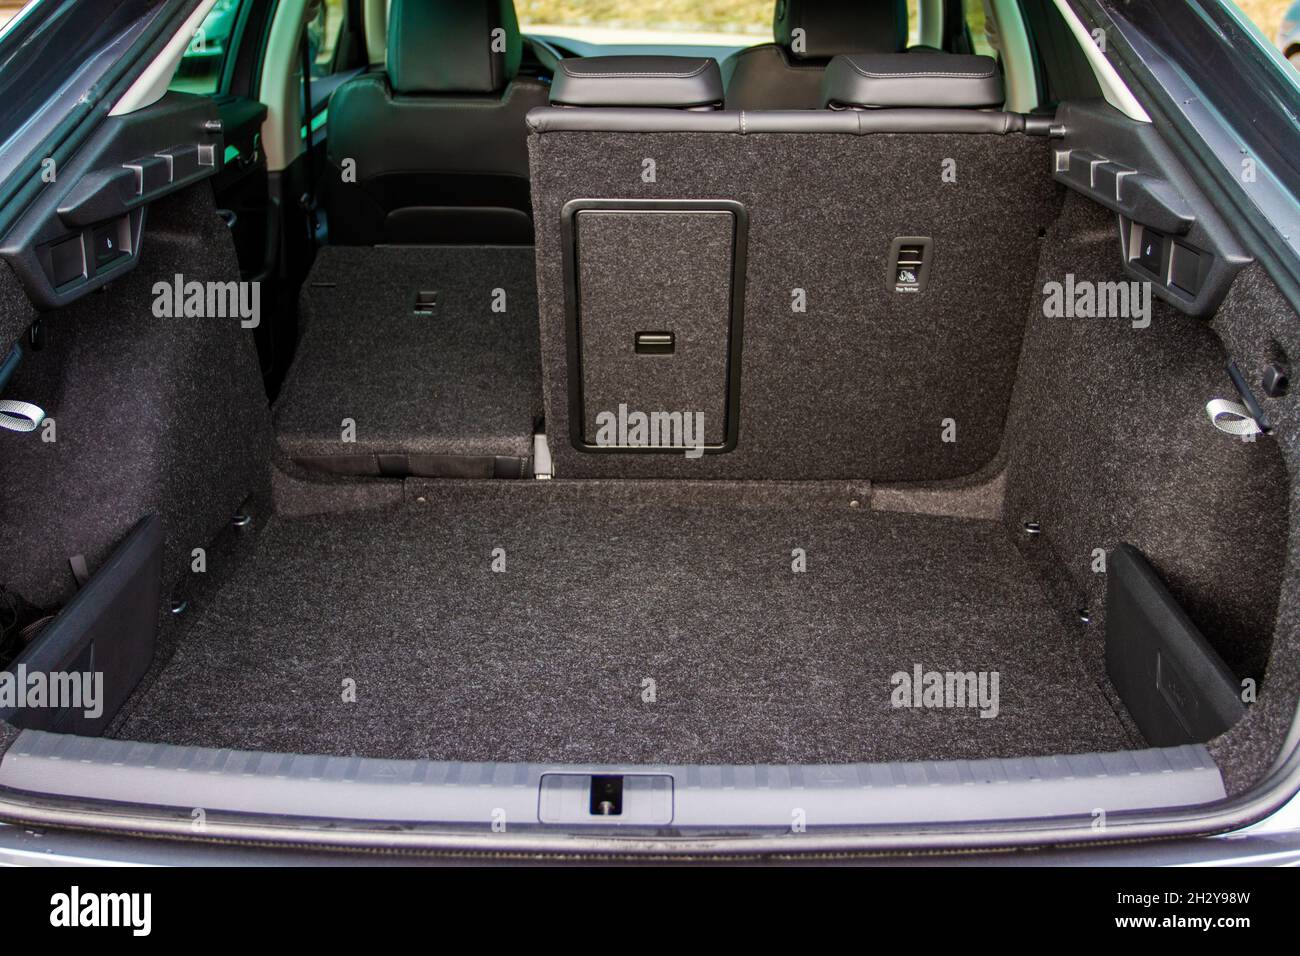 https://c8.alamy.com/compde/2h2y98w/moderne-limousine-auto-offenen-kofferraum-riesiger-sauberer-und-leerer-kofferraum-im-inneren-eines-modernen-autos-2h2y98w.jpg